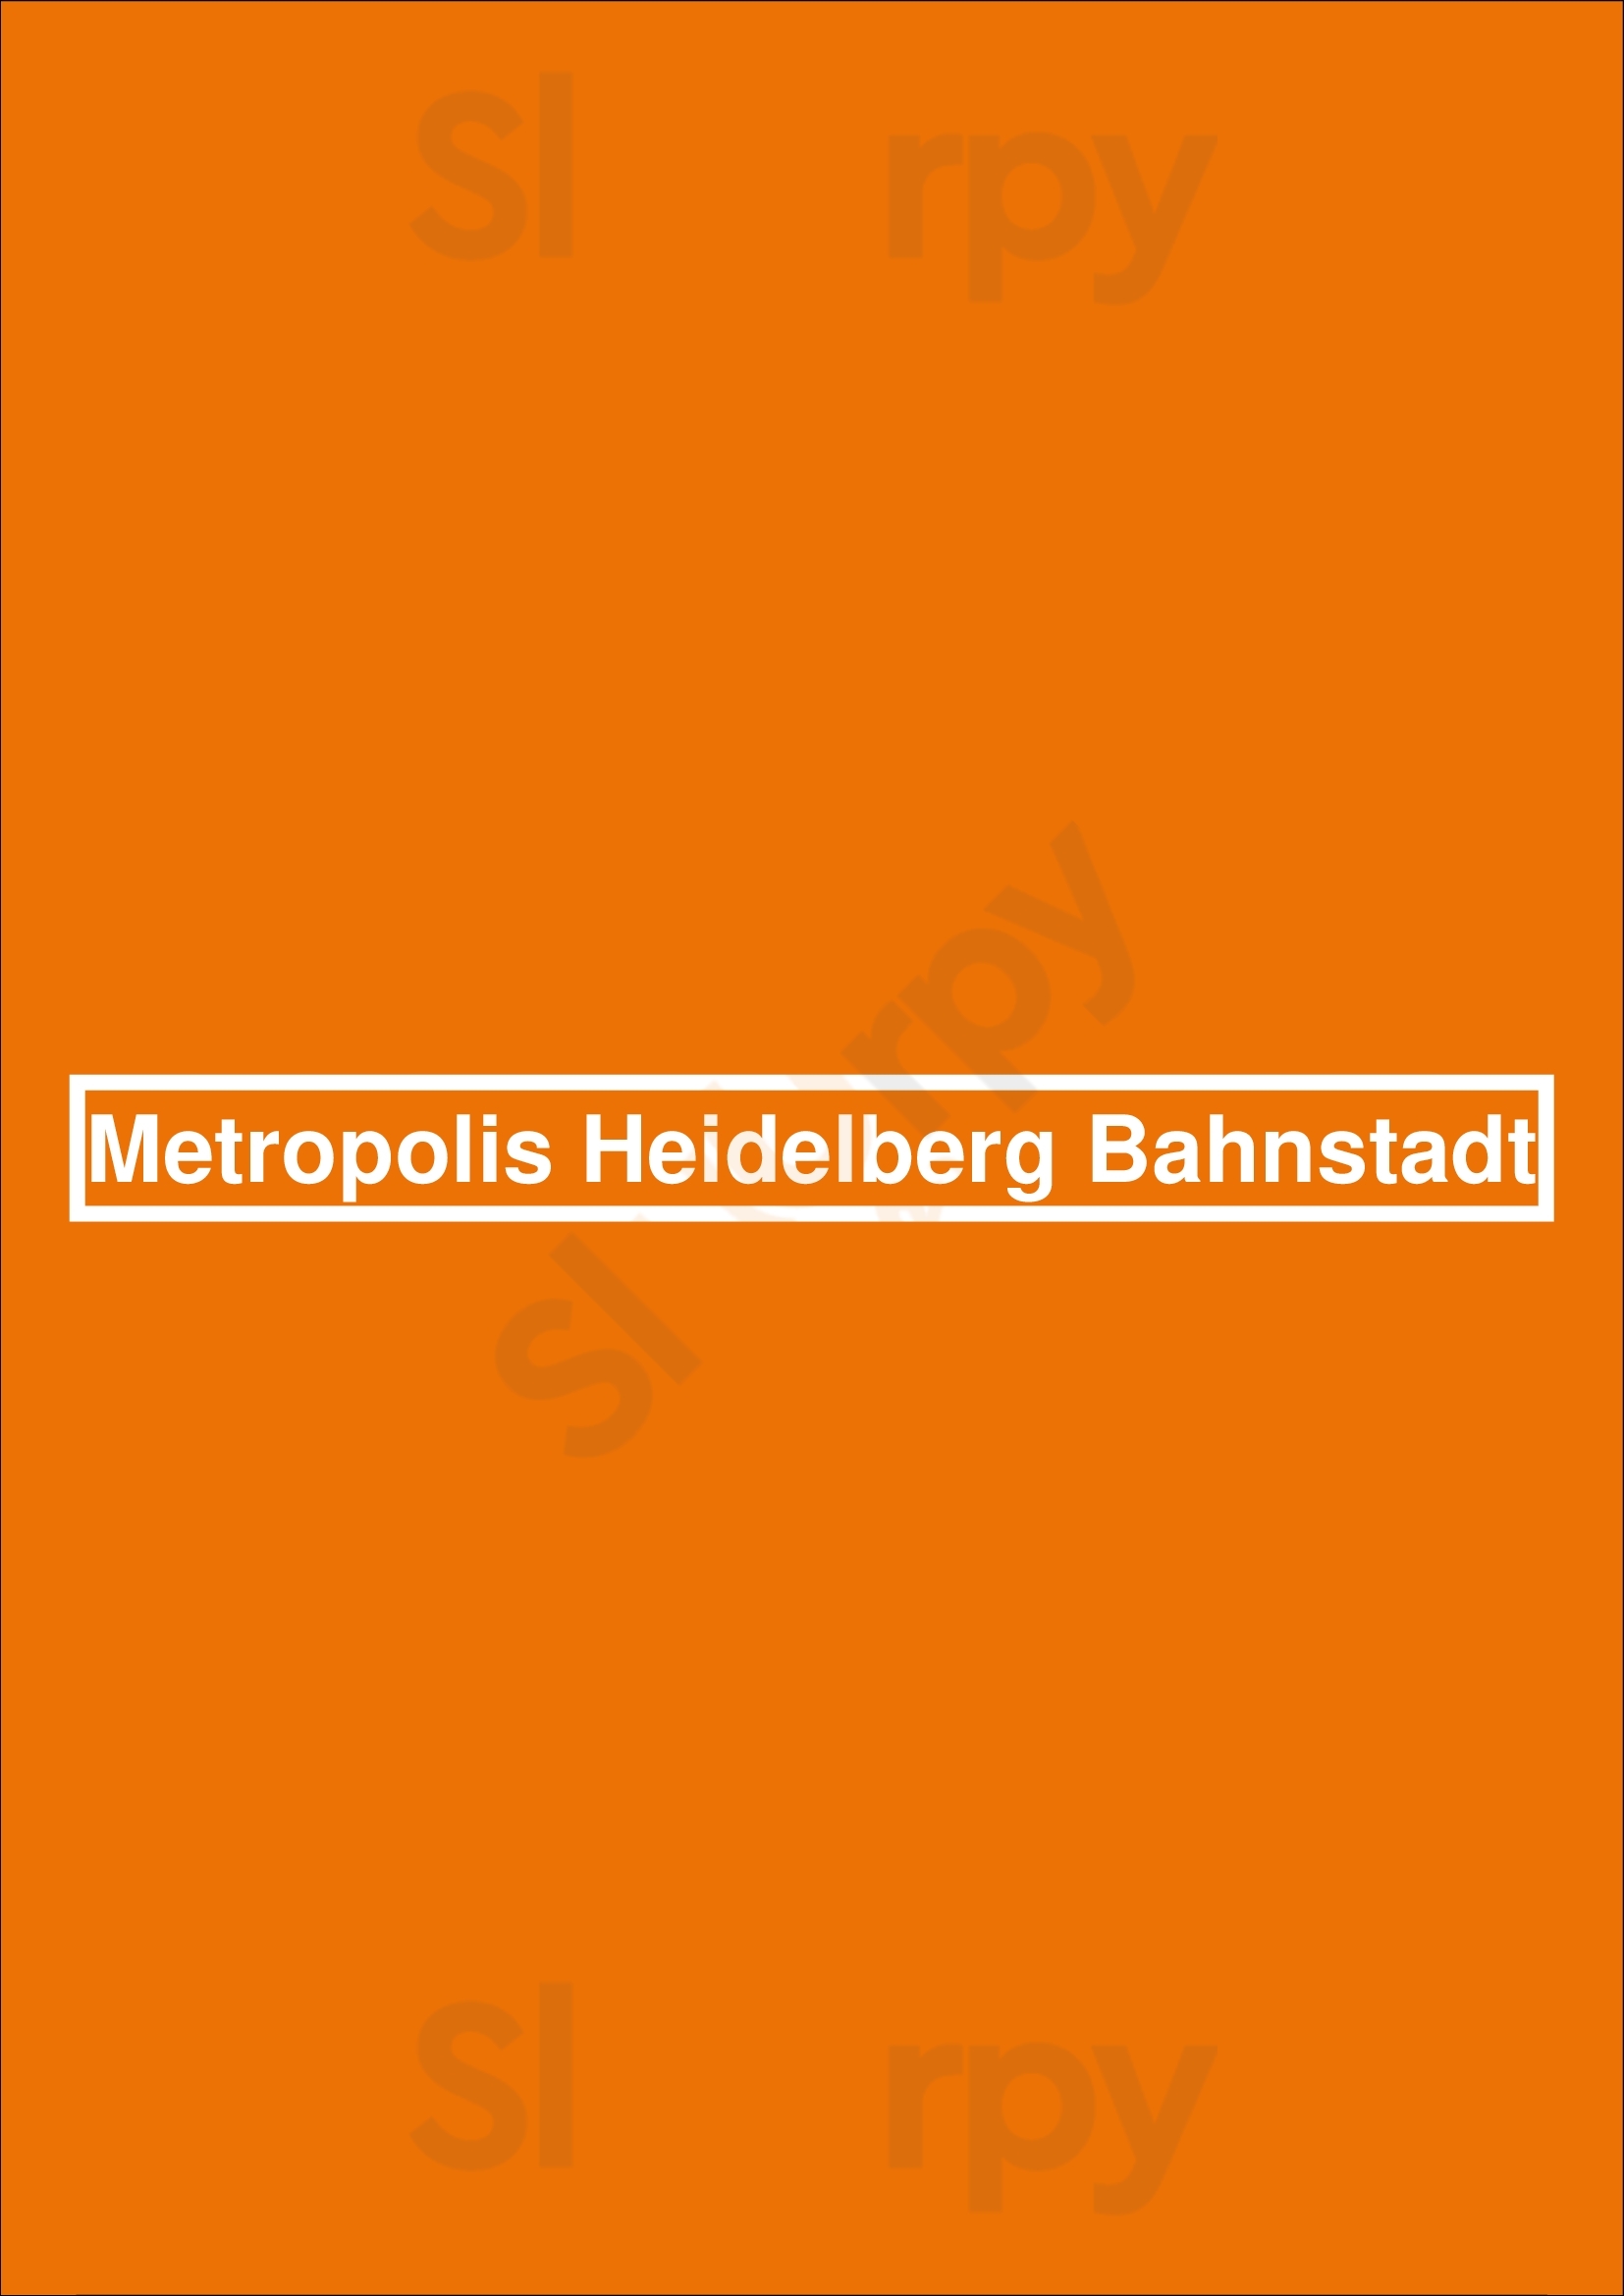 Metropolis Heidelberg Bahnstadt Heidelberg Menu - 1